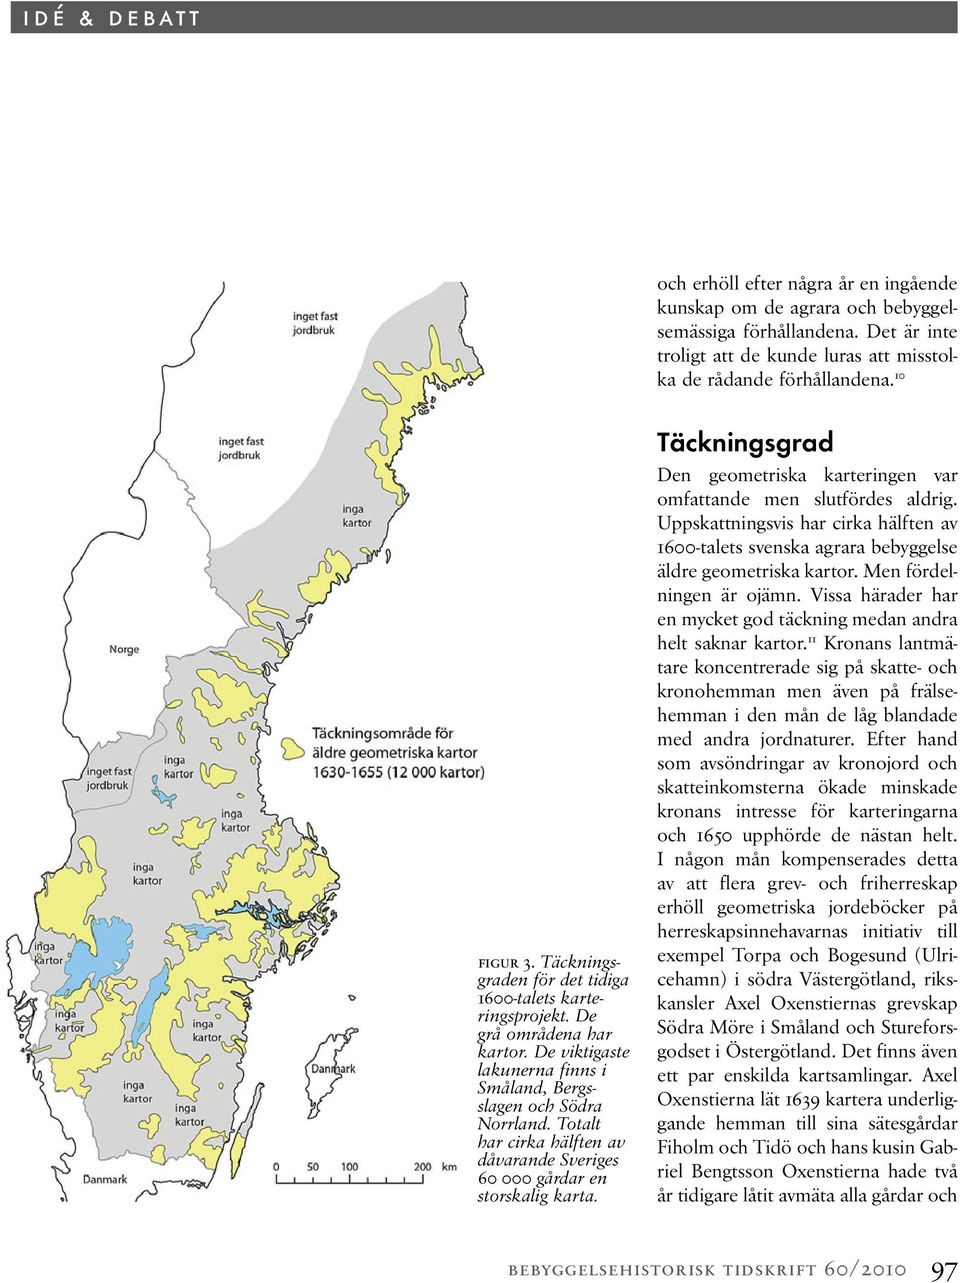 Totalt har cirka hälften av dåvarande Sveriges 60 000 gårdar en storskalig karta. Täckningsgrad Den geometriska karteringen var omfattande men slutfördes aldrig.